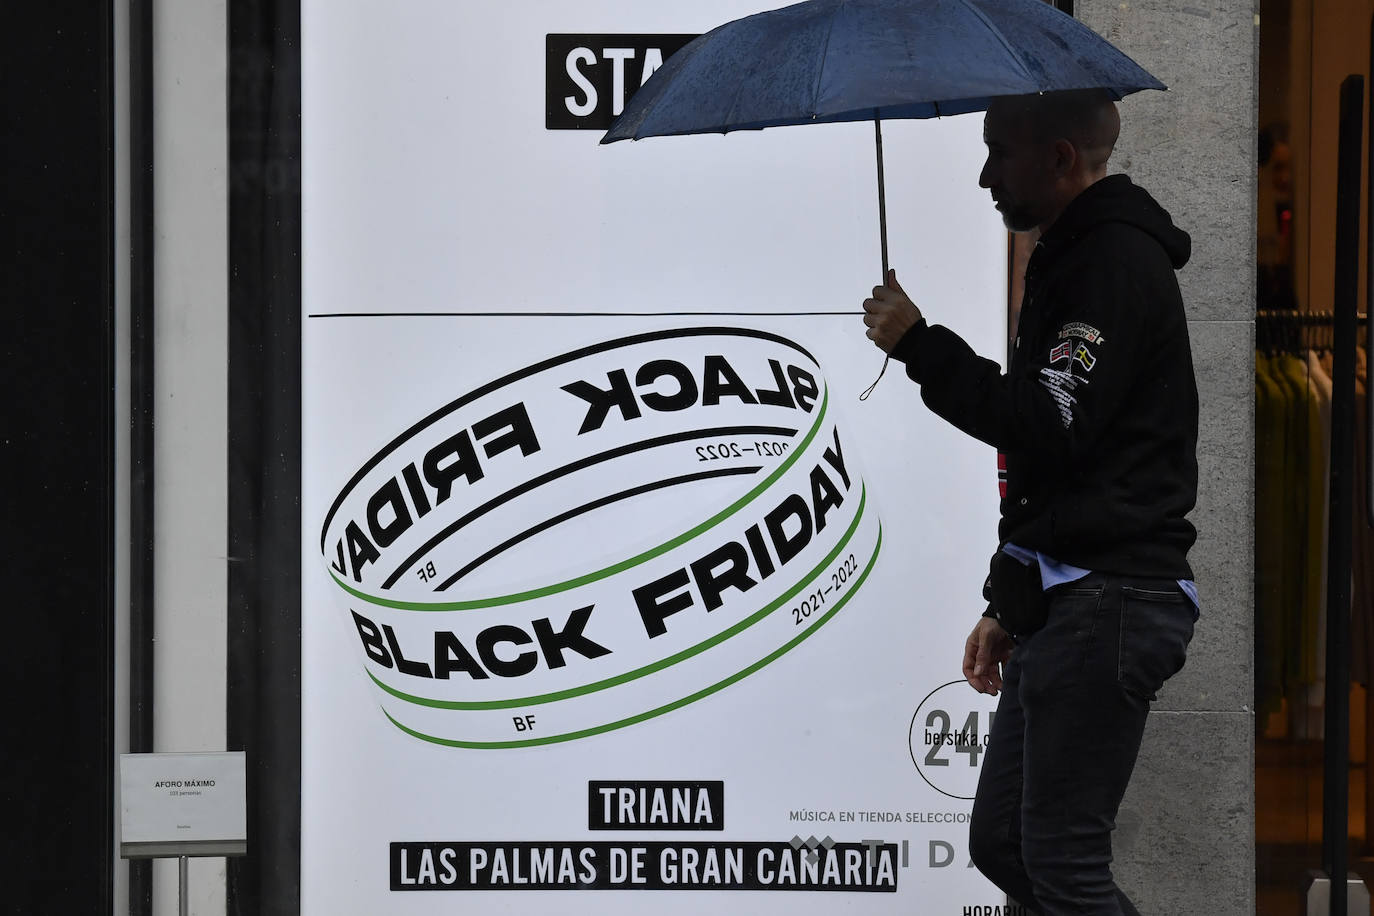 La previsión de caída de ventas del 'Black Friday' recorta la contratación en Canarias al nivel de 2018 